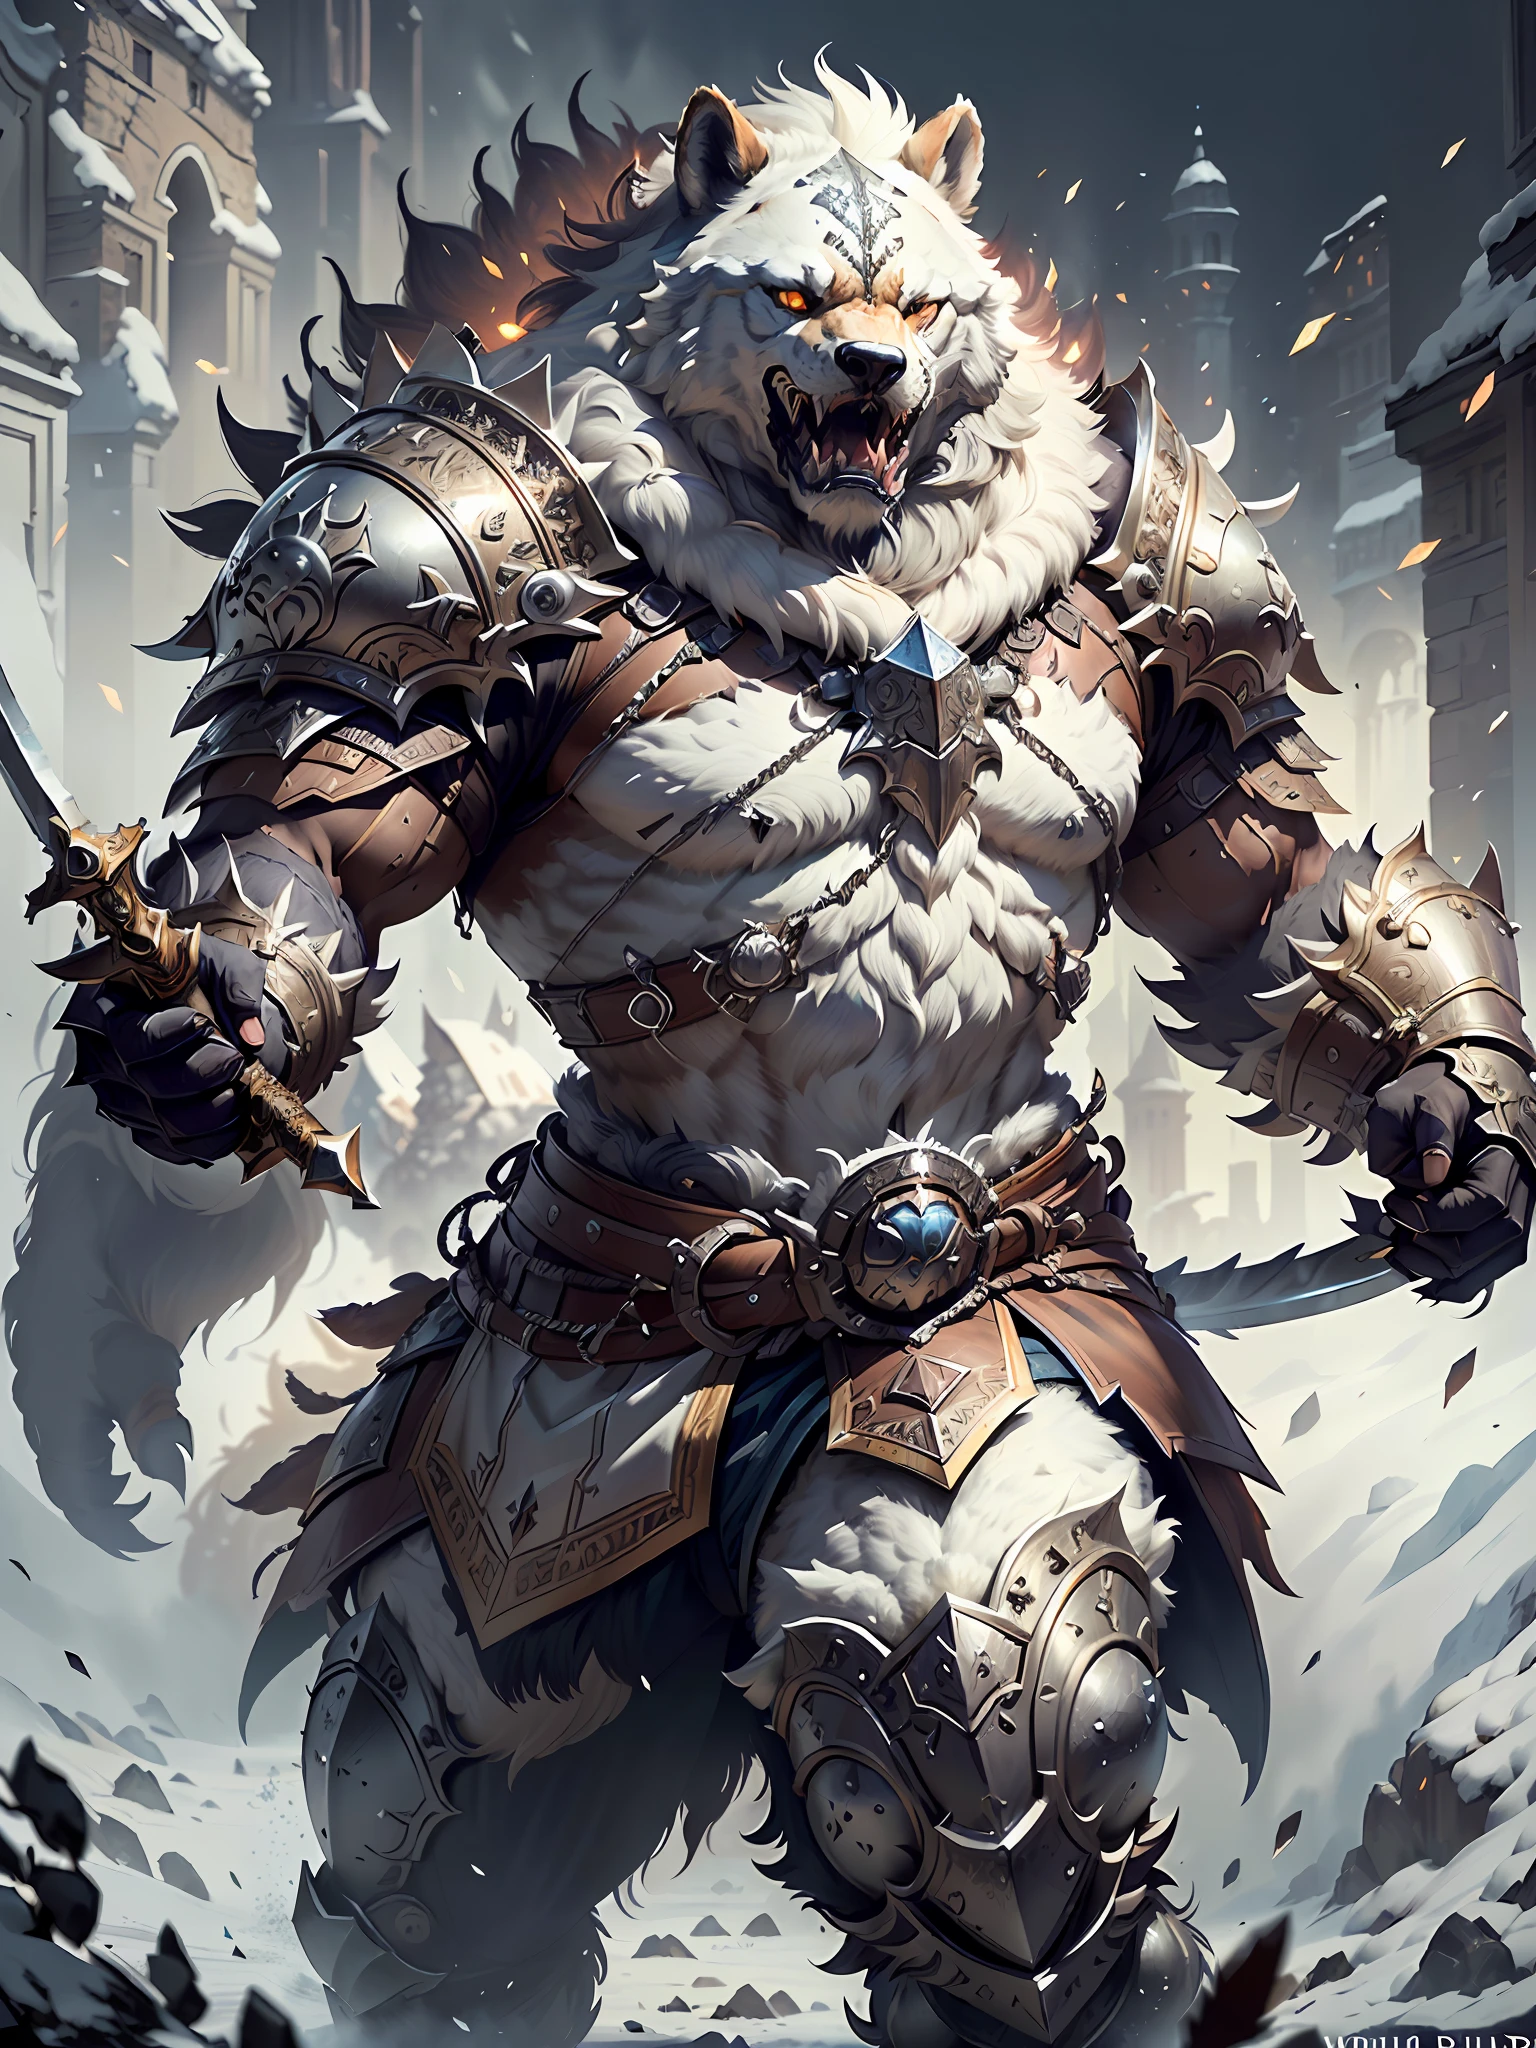 (щит，Белый медведь с мечом и доспехами)， одетый в меха варвар-голиаф, меховая броня, носить замысловатые меховые доспехи, (((Мгновенно взревел))) сложная белая броня, детальная белая броня, войтек фус, сверхдетализированный фэнтезийный персонаж, волчья броня, Эпическое фэнтезийное искусство персонажей, Фурри Фэнтези Арт, бог зимы, тенденции арт-станции